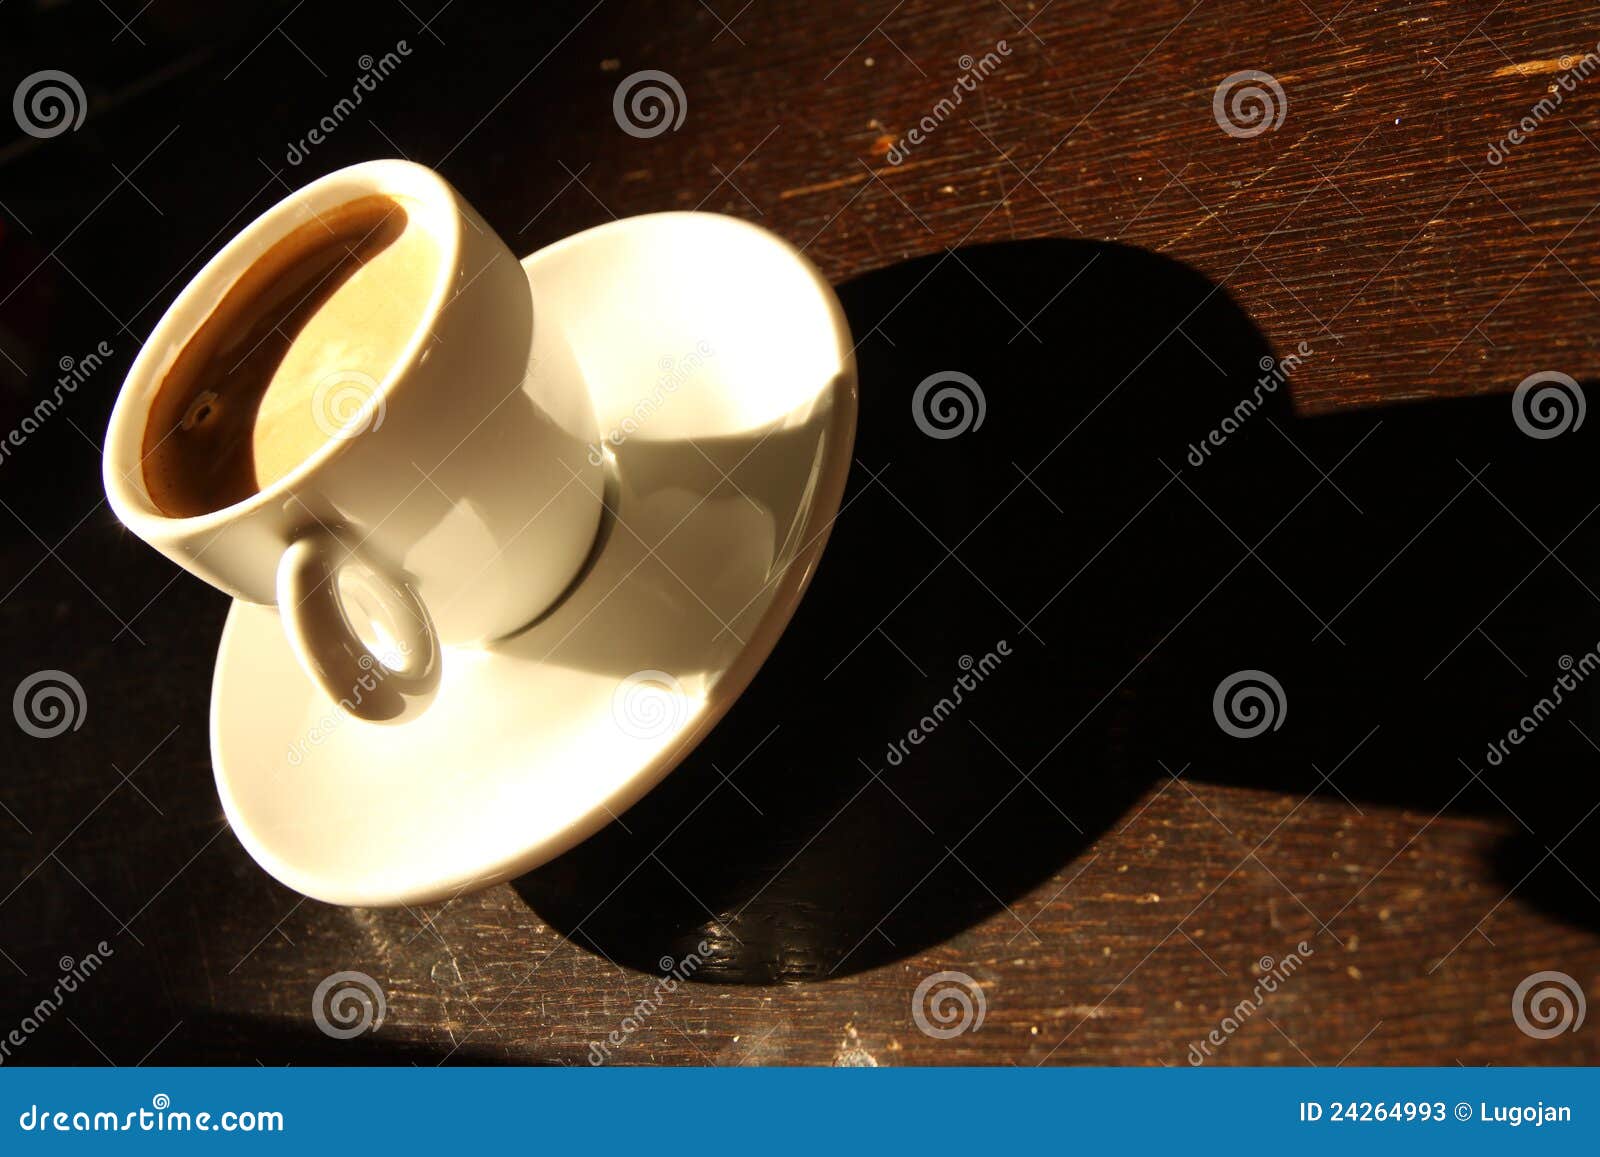 创意叶子传统文化竹子影子茶具杯子茶文化茶杯清新图片 - Canva可画